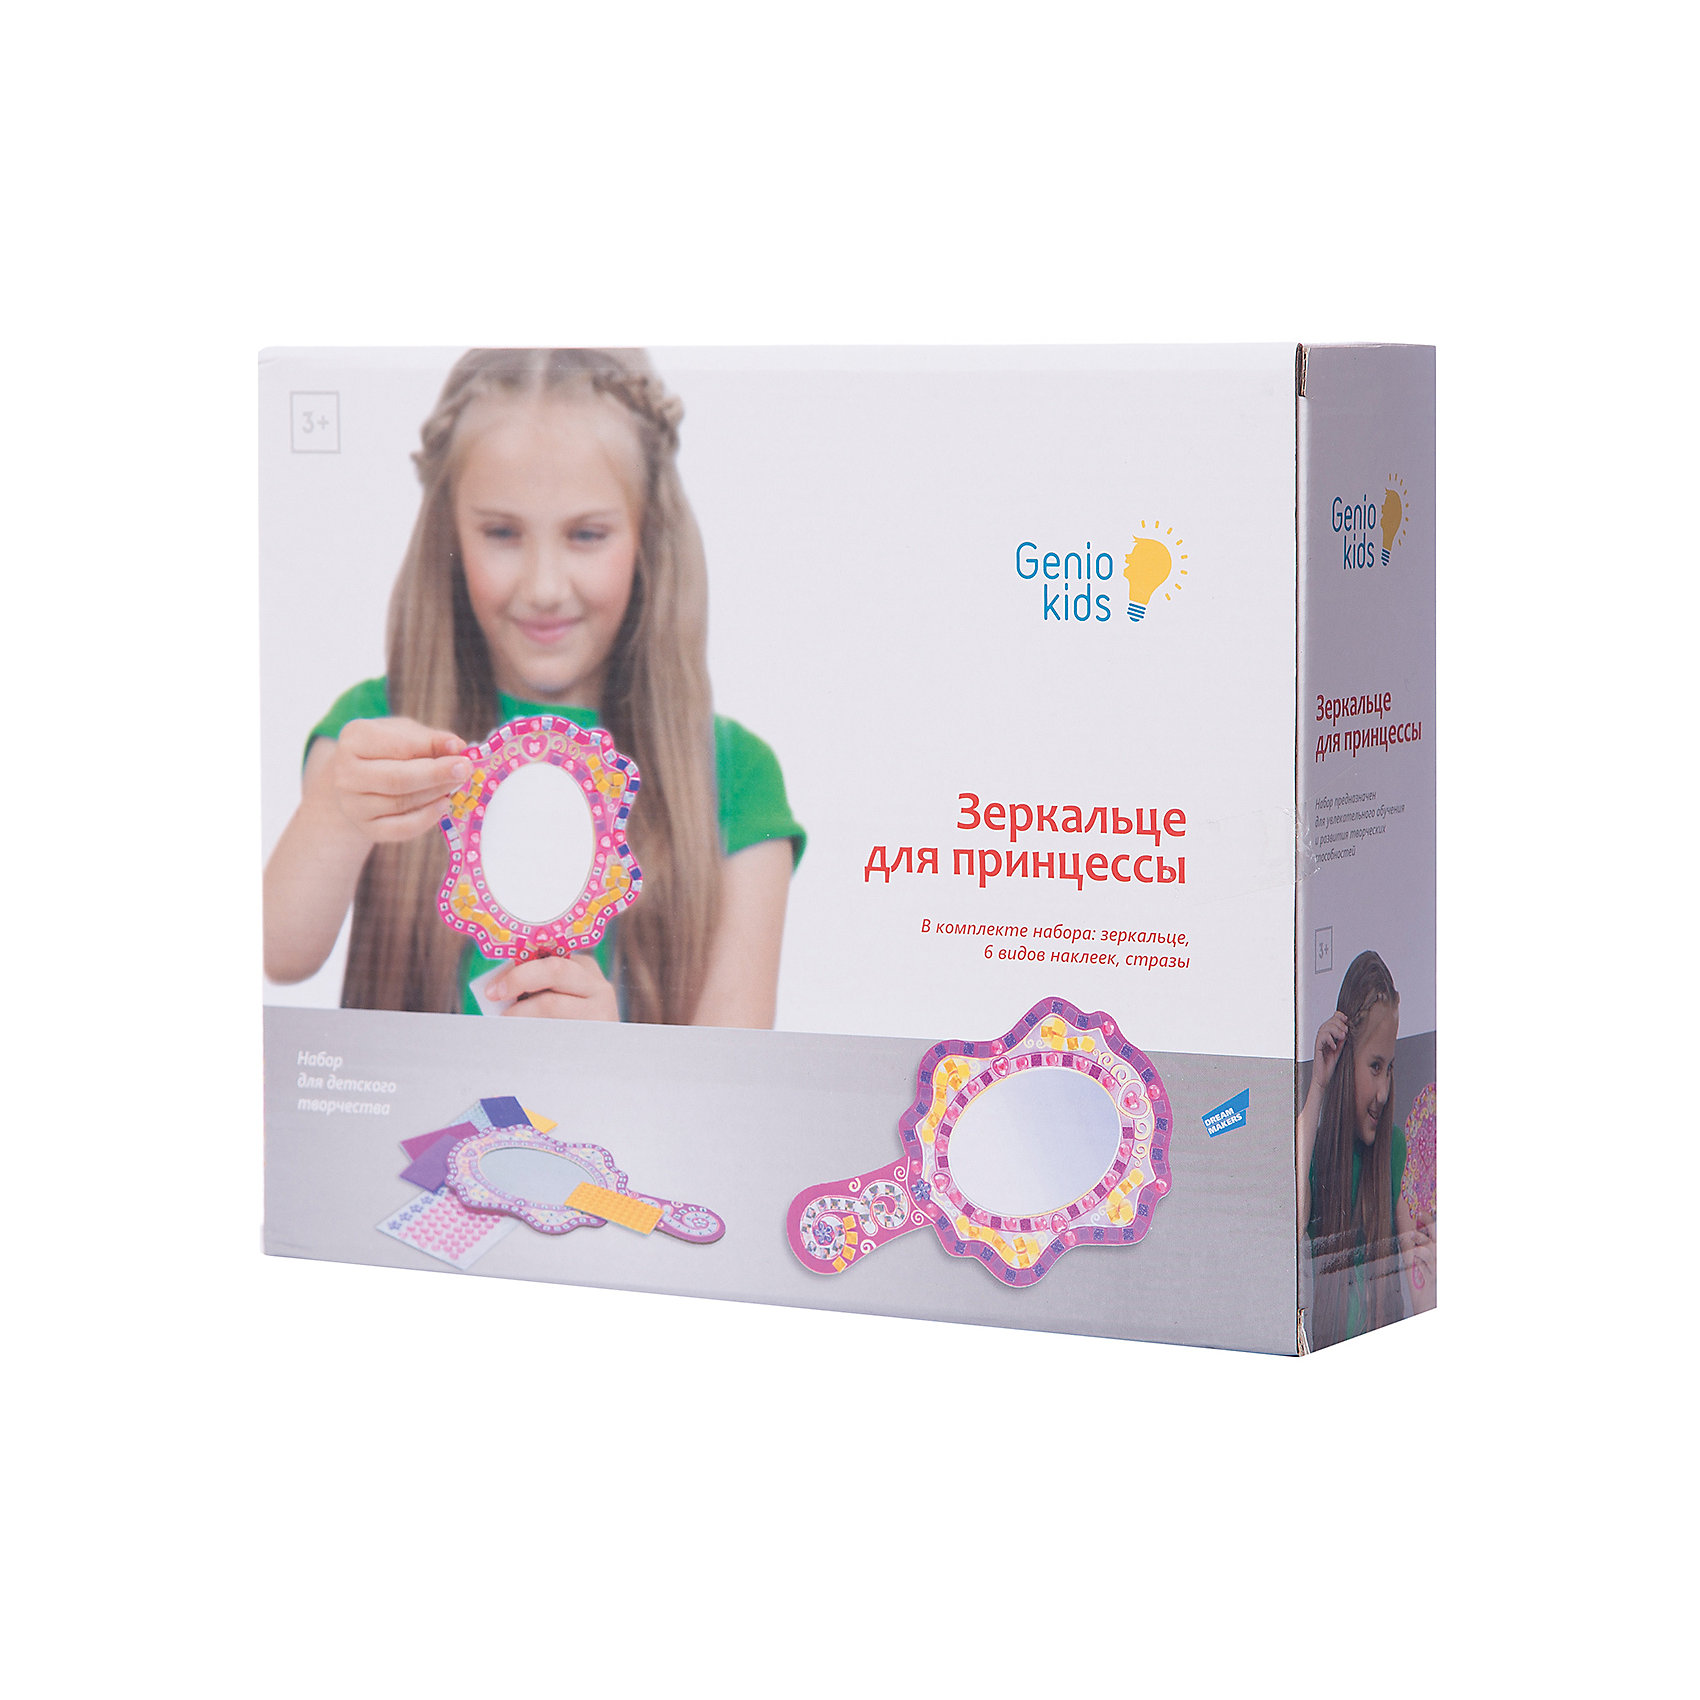 Набор для детского творчества “Зеркальце принцессы” Genio Kids 5018332